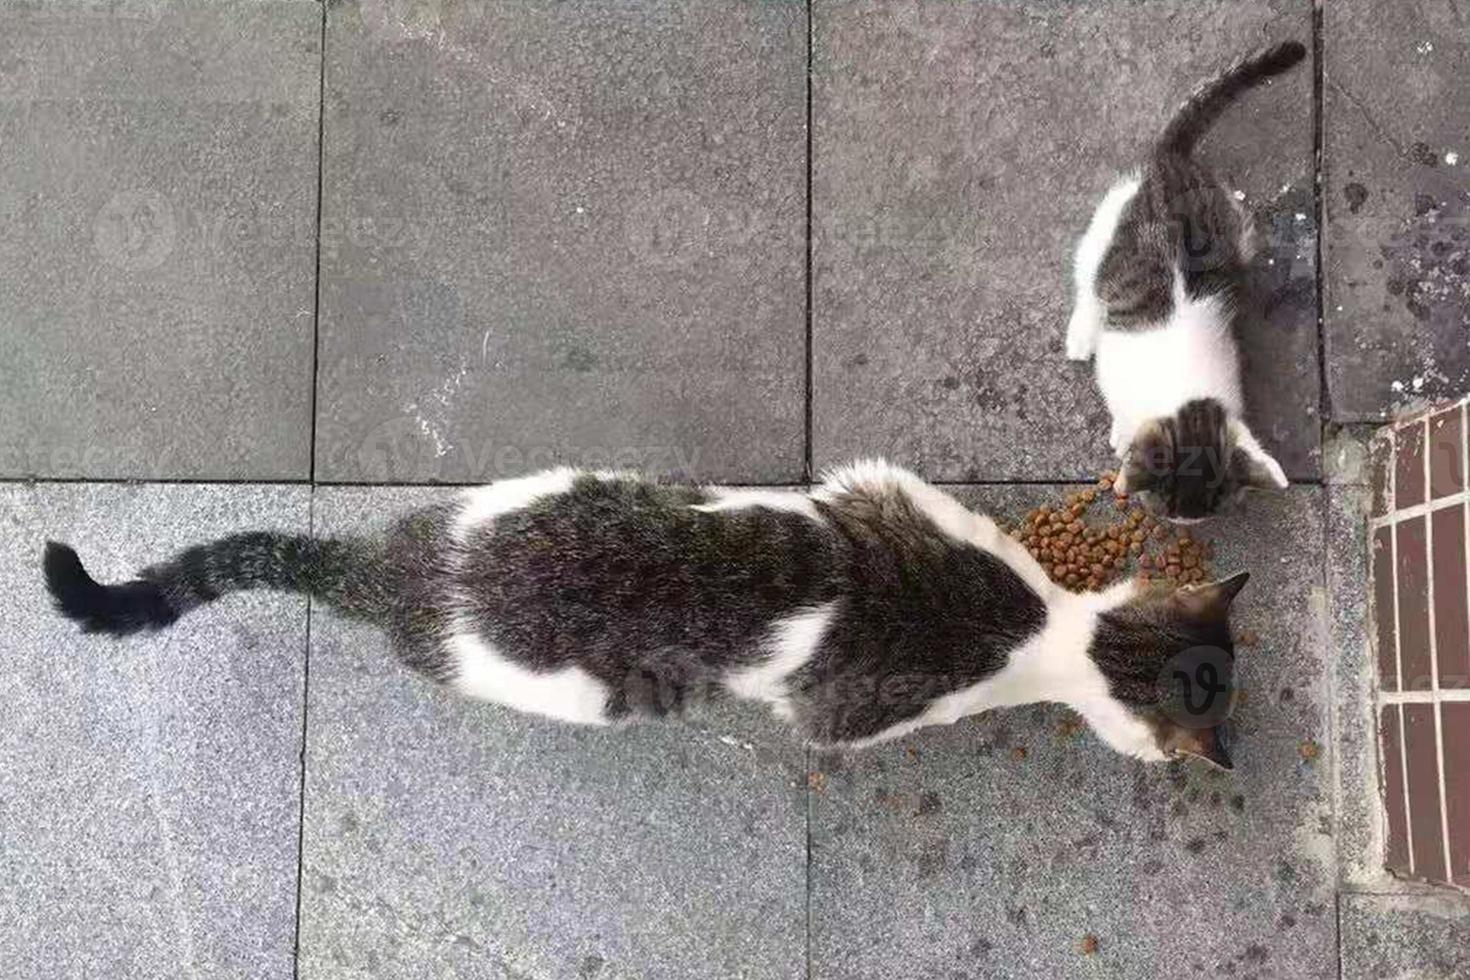 verdwaald moeder kat en katje zijn aan het eten voedsel. grijs katten. foto